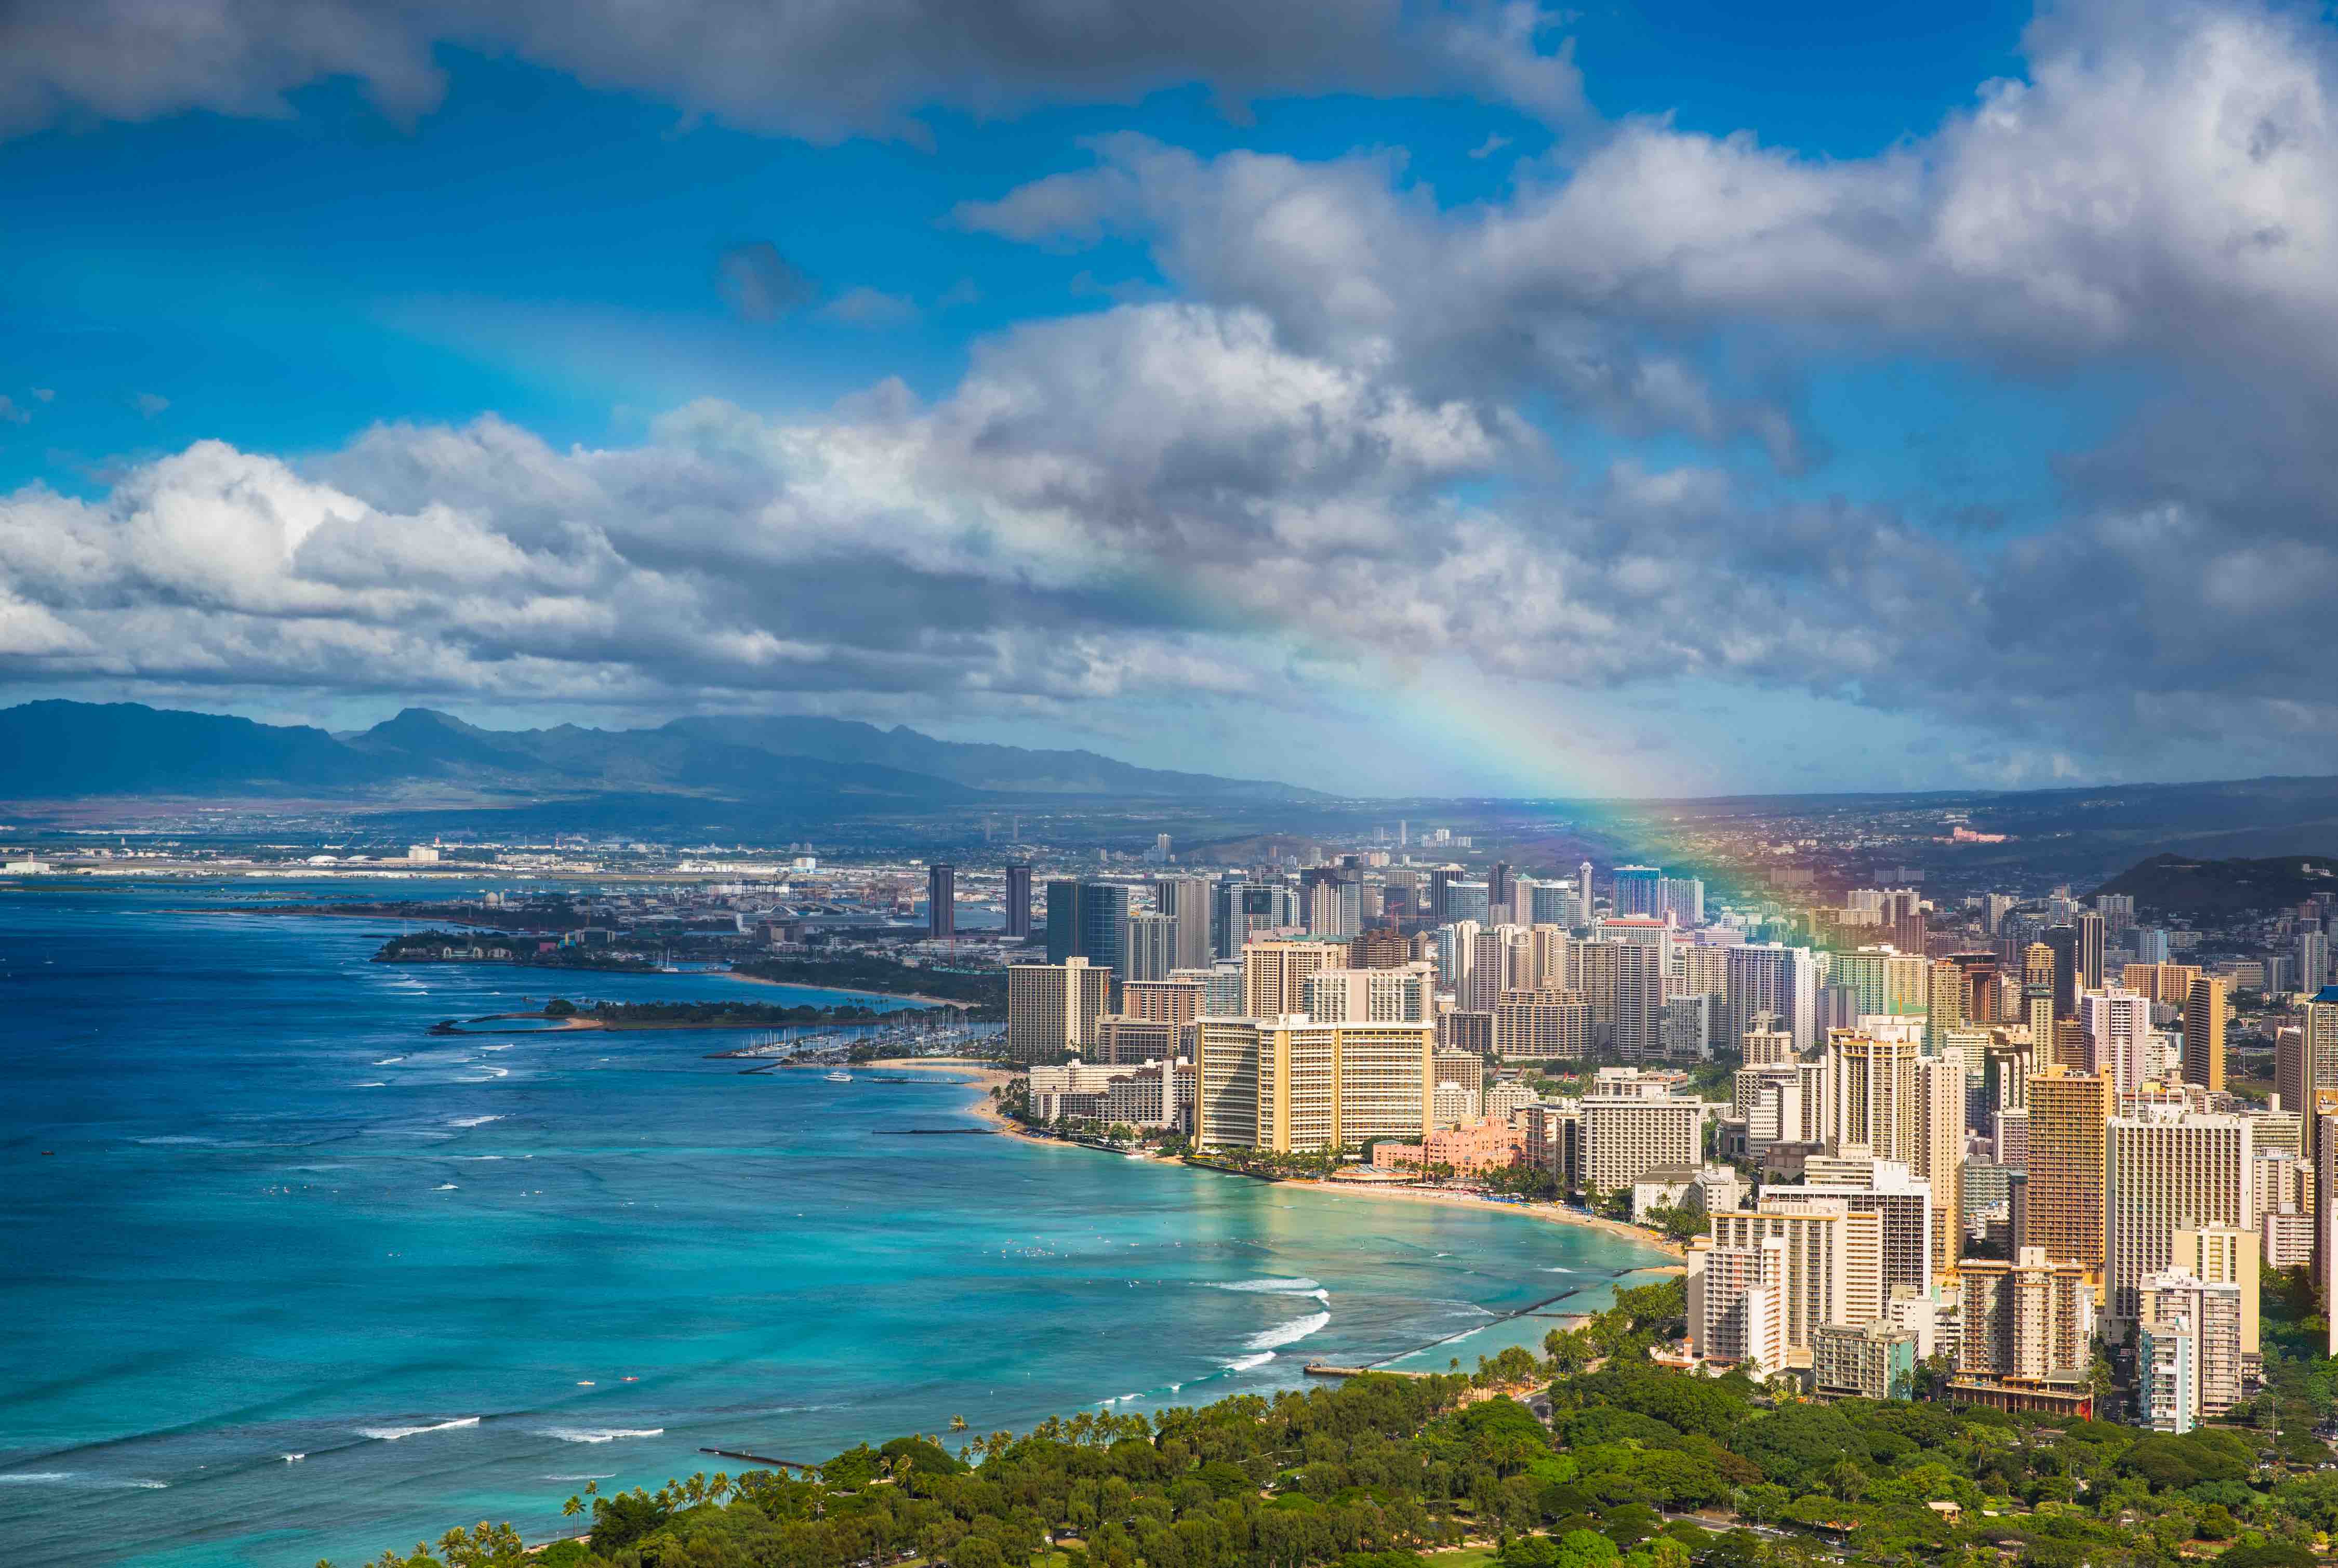 Rainbow over the Hawaii skyline